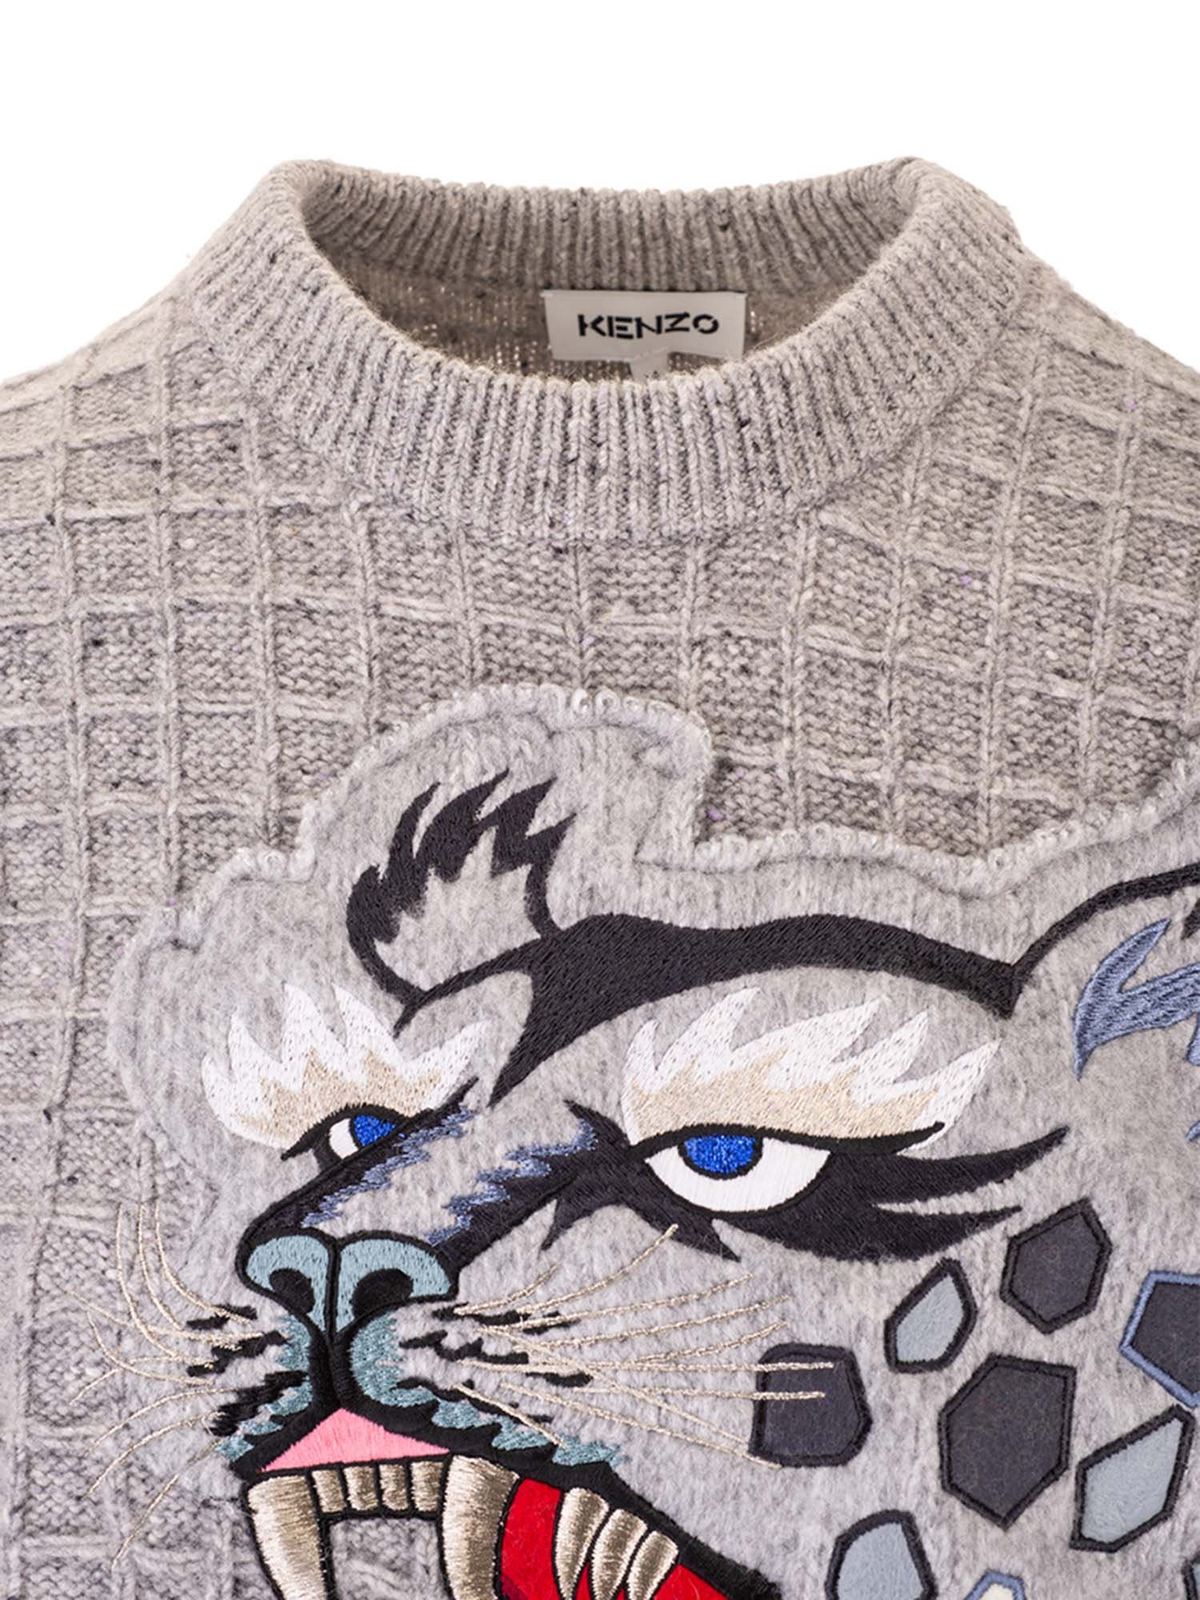 Kenzo Grey Kansai Yamamoto Edition Wool Embroidered Sweater